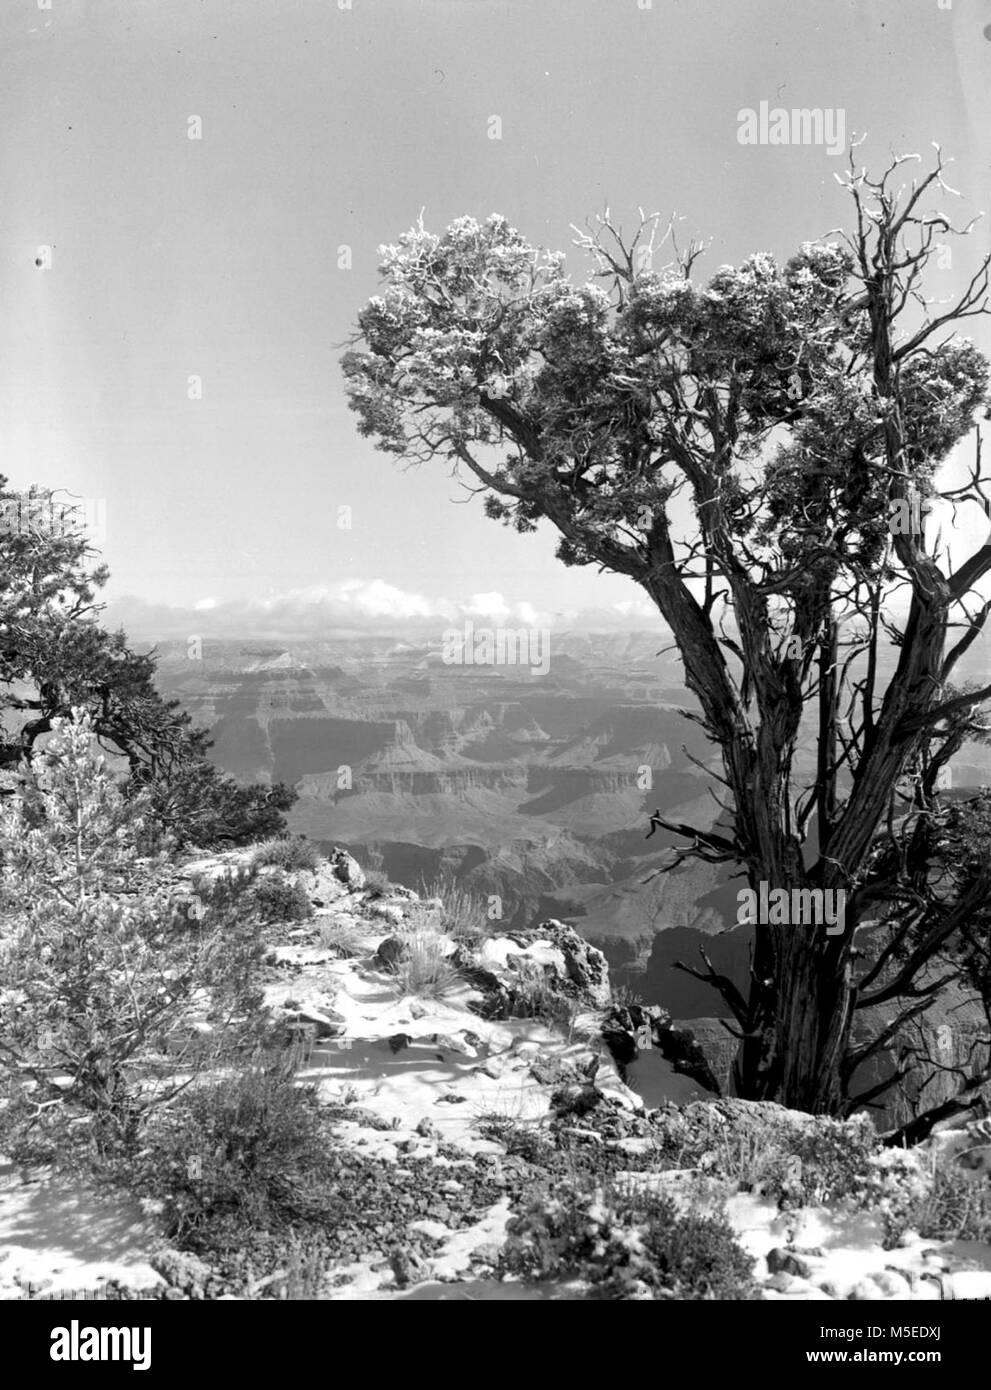 Grand Canyon Punto Hopi escena de nieve, el Borde Sur del Gran Cañón de RIM, Corta distancia al este del punto hopi. FEB. 27, 1953. Foto de stock